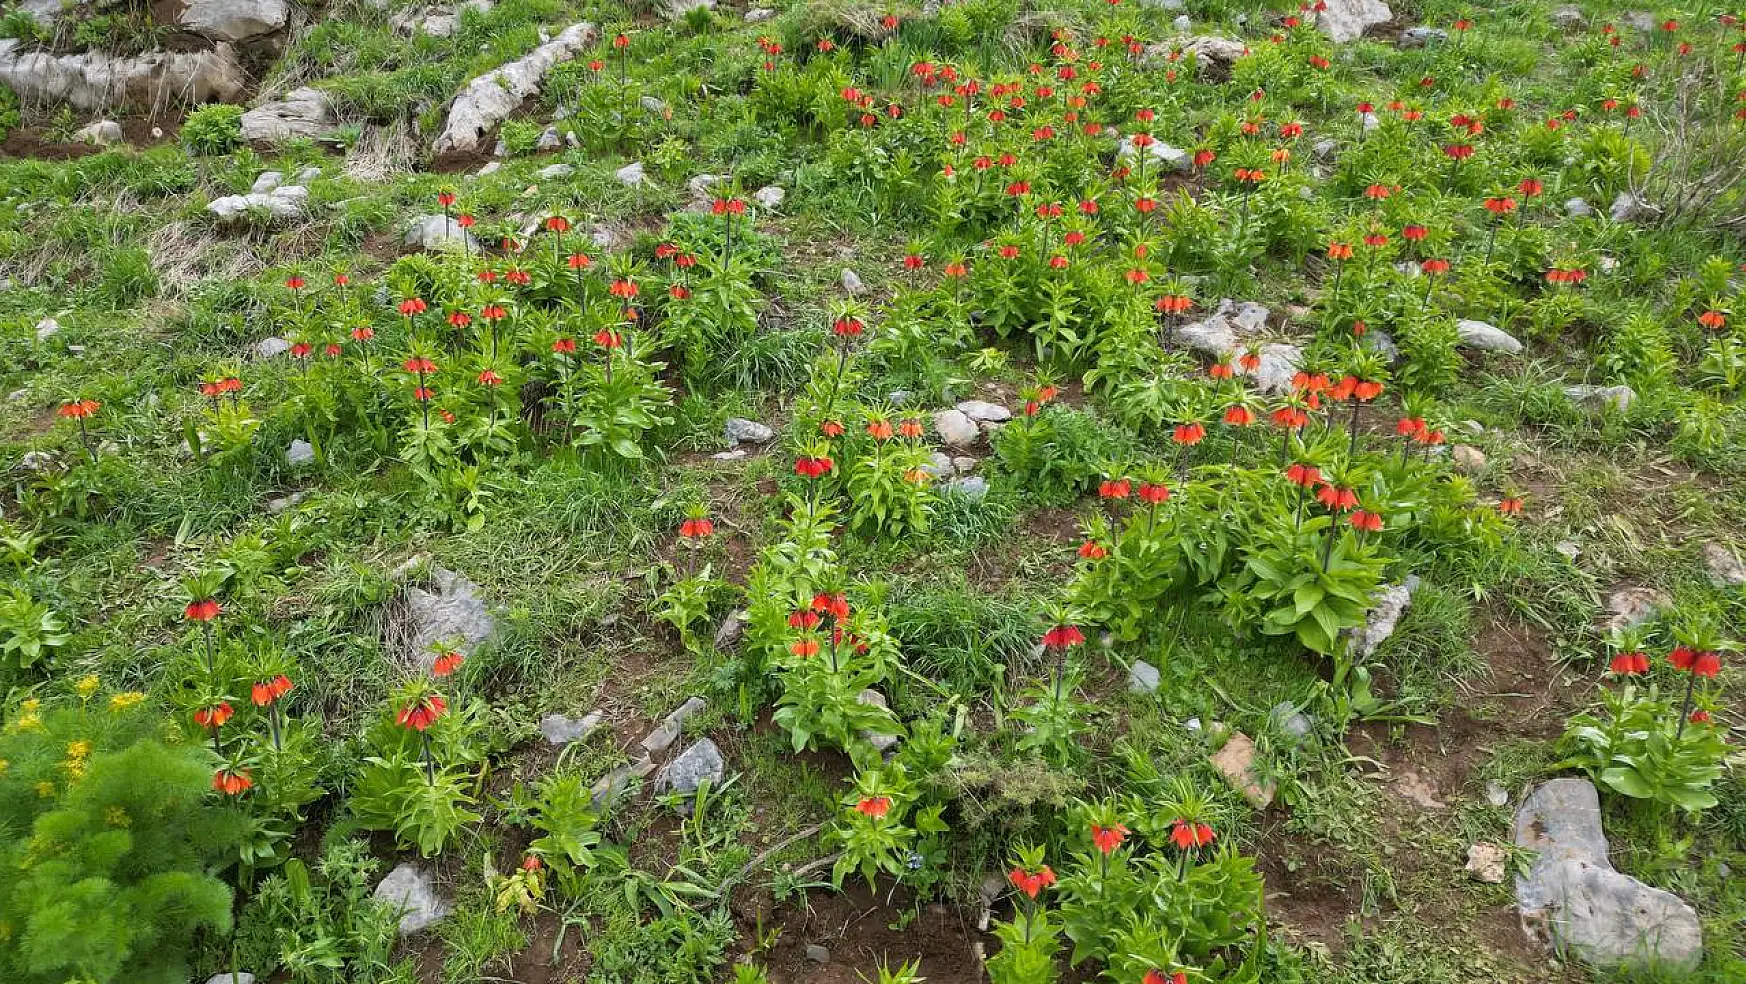 Şırnak'ın Uludere ilçesi Tanin Dağları'nda ters lale etkinliği gerçekleştirildi